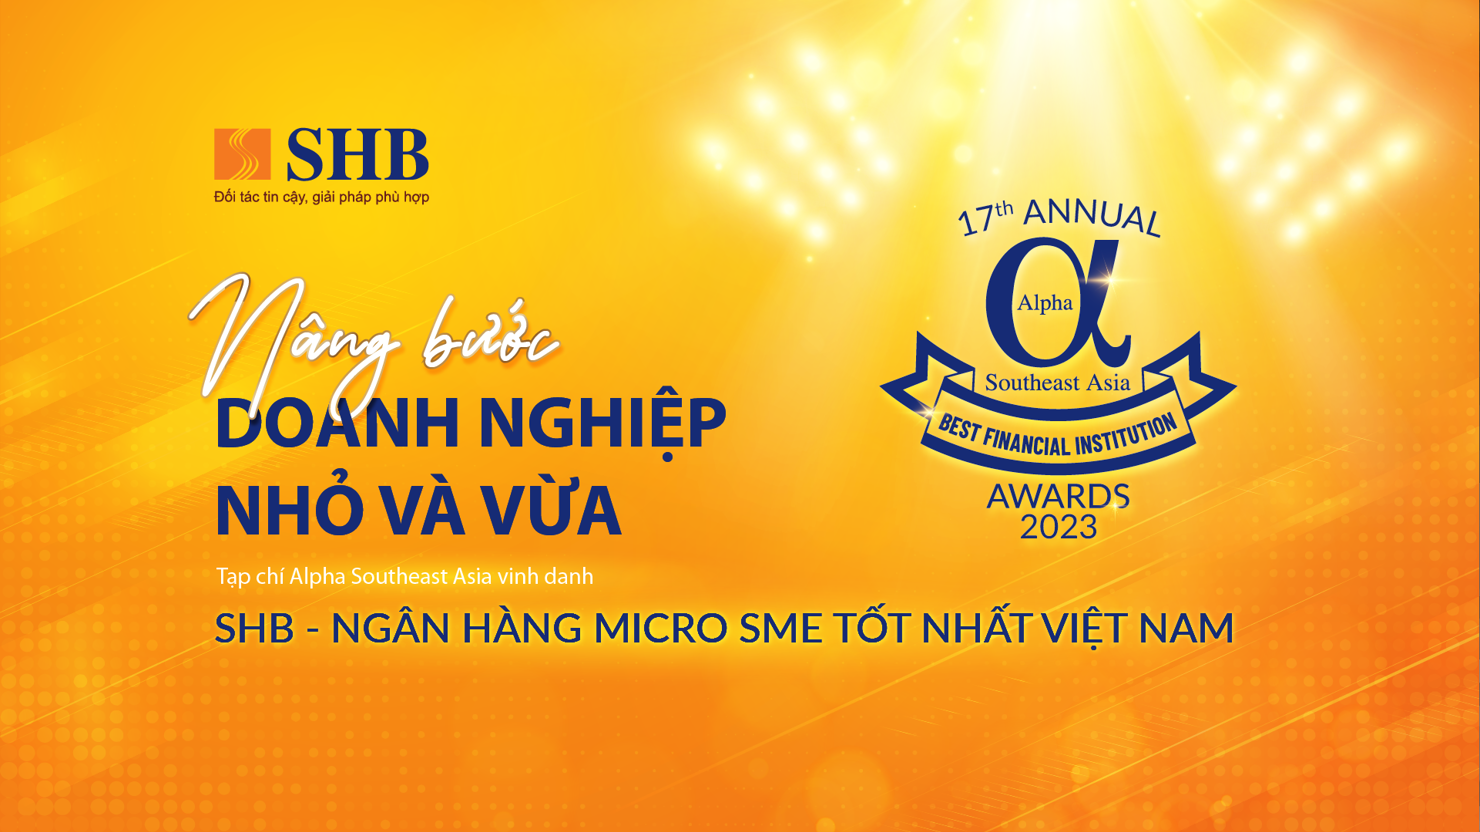 SHB đạt giải thưởng là “Ngân hàng Micro SME tốt nhất tại Việt Nam”. Nguồn: SHB